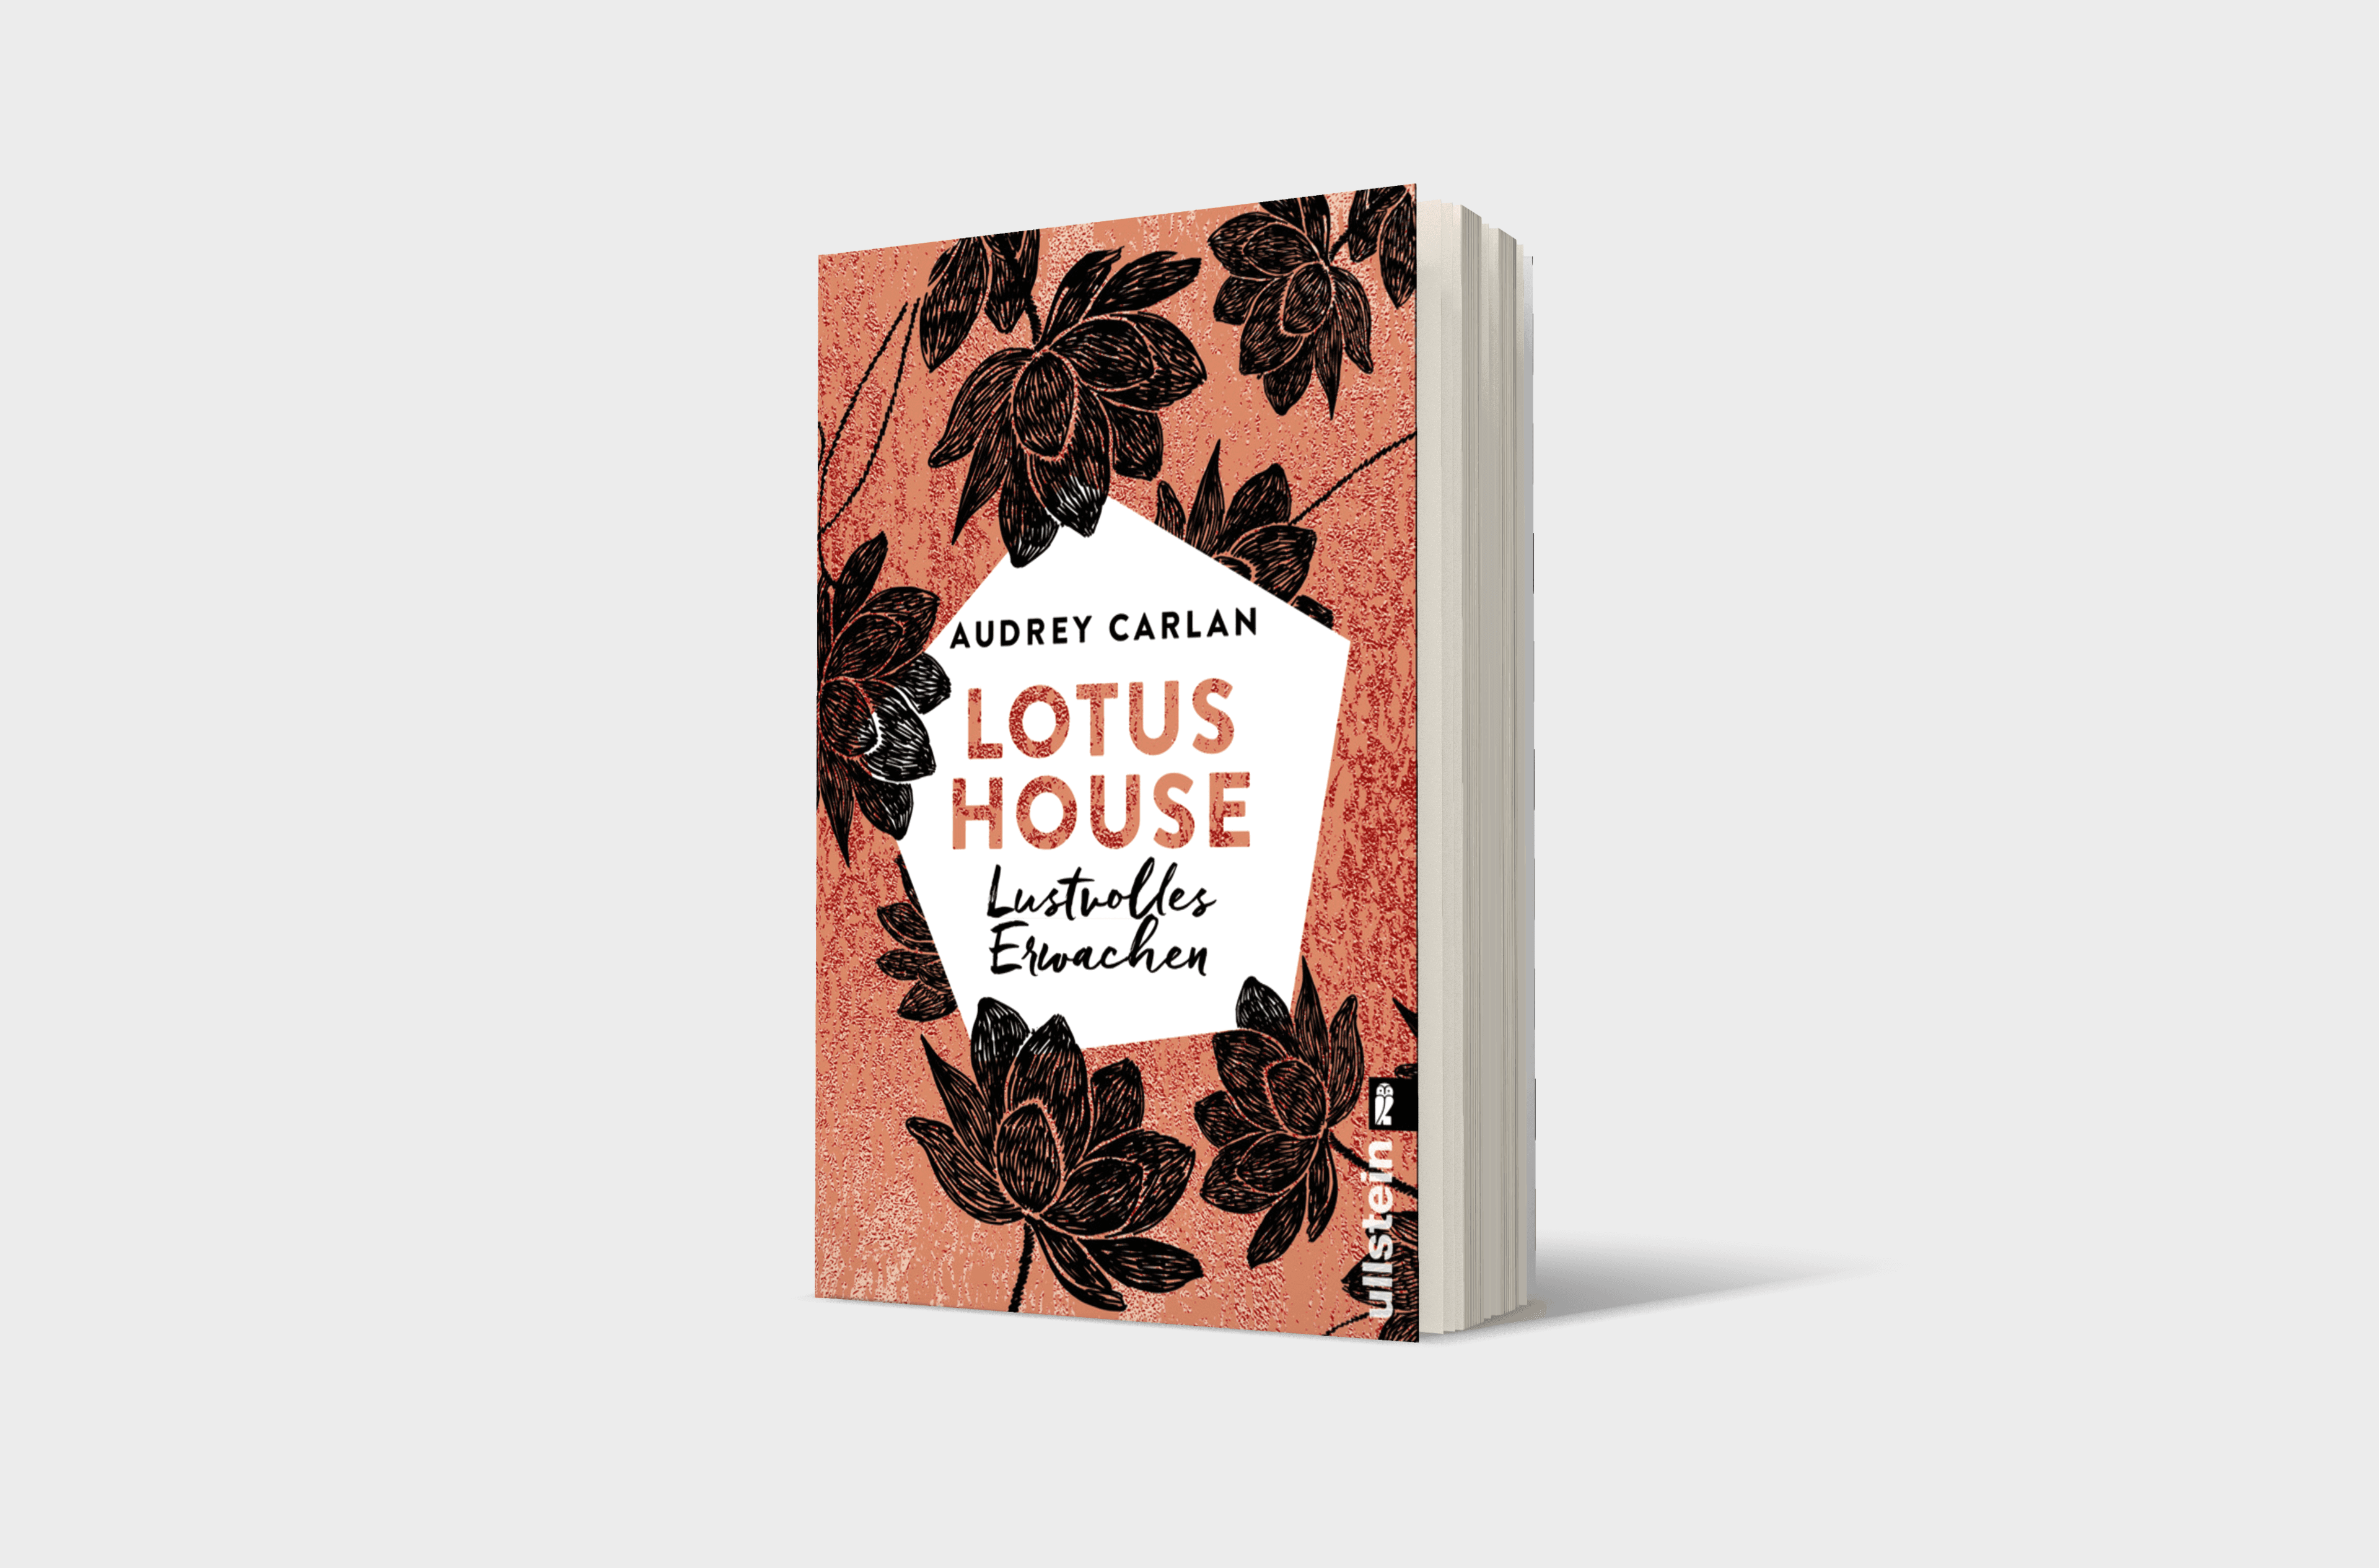 Buchcover von Lotus House - Lustvolles Erwachen (Die Lotus House-Serie 1)